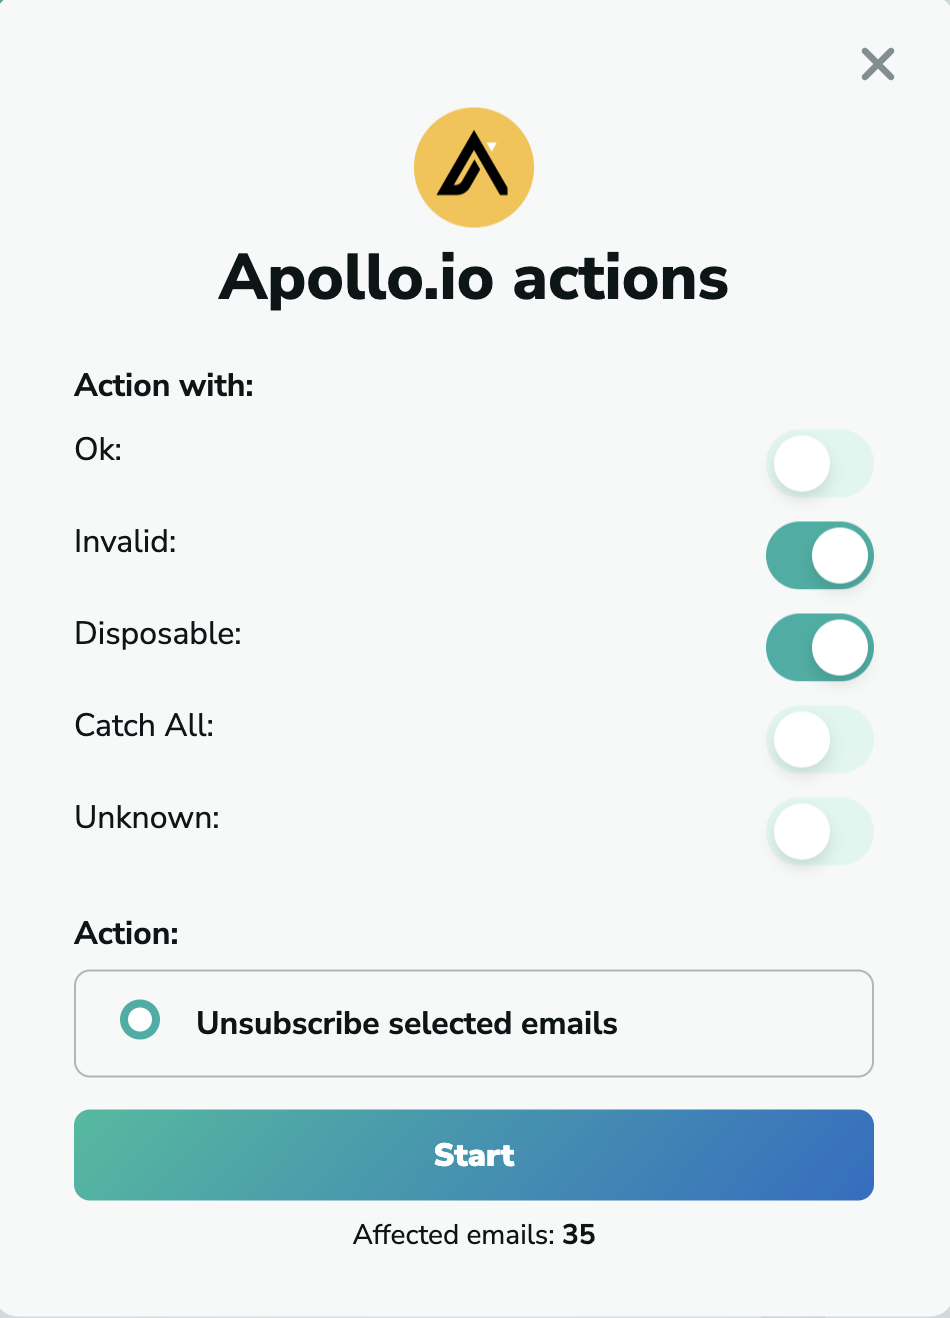 Apollo.io unsubscribe emails in MillionVerifier